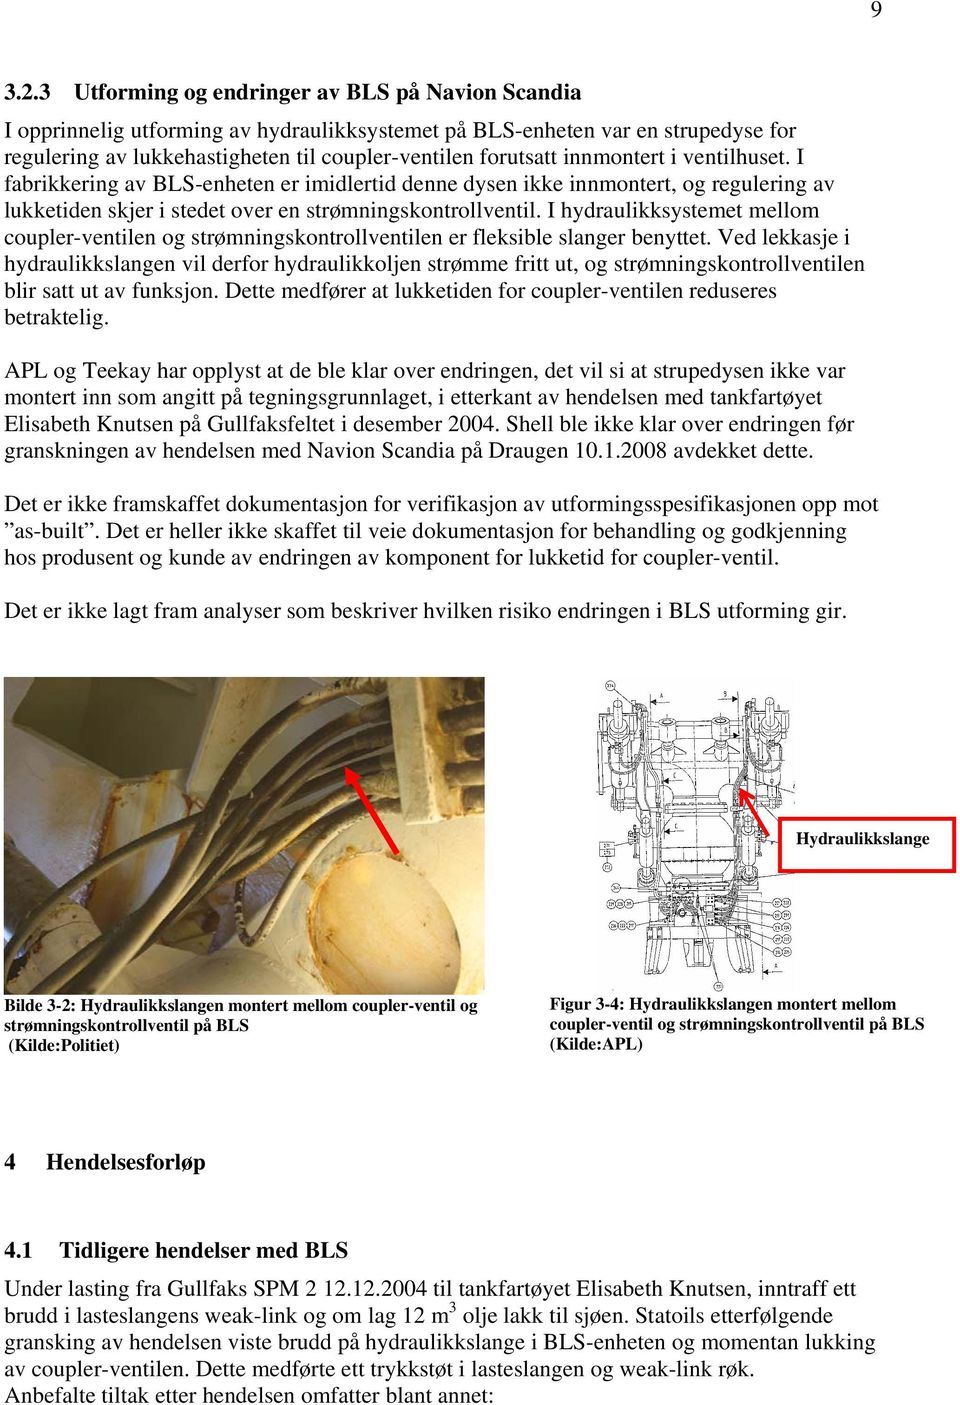 innmontert i ventilhuset. I fabrikkering av BLS-enheten er imidlertid denne dysen ikke innmontert, og regulering av lukketiden skjer i stedet over en strømningskontrollventil.